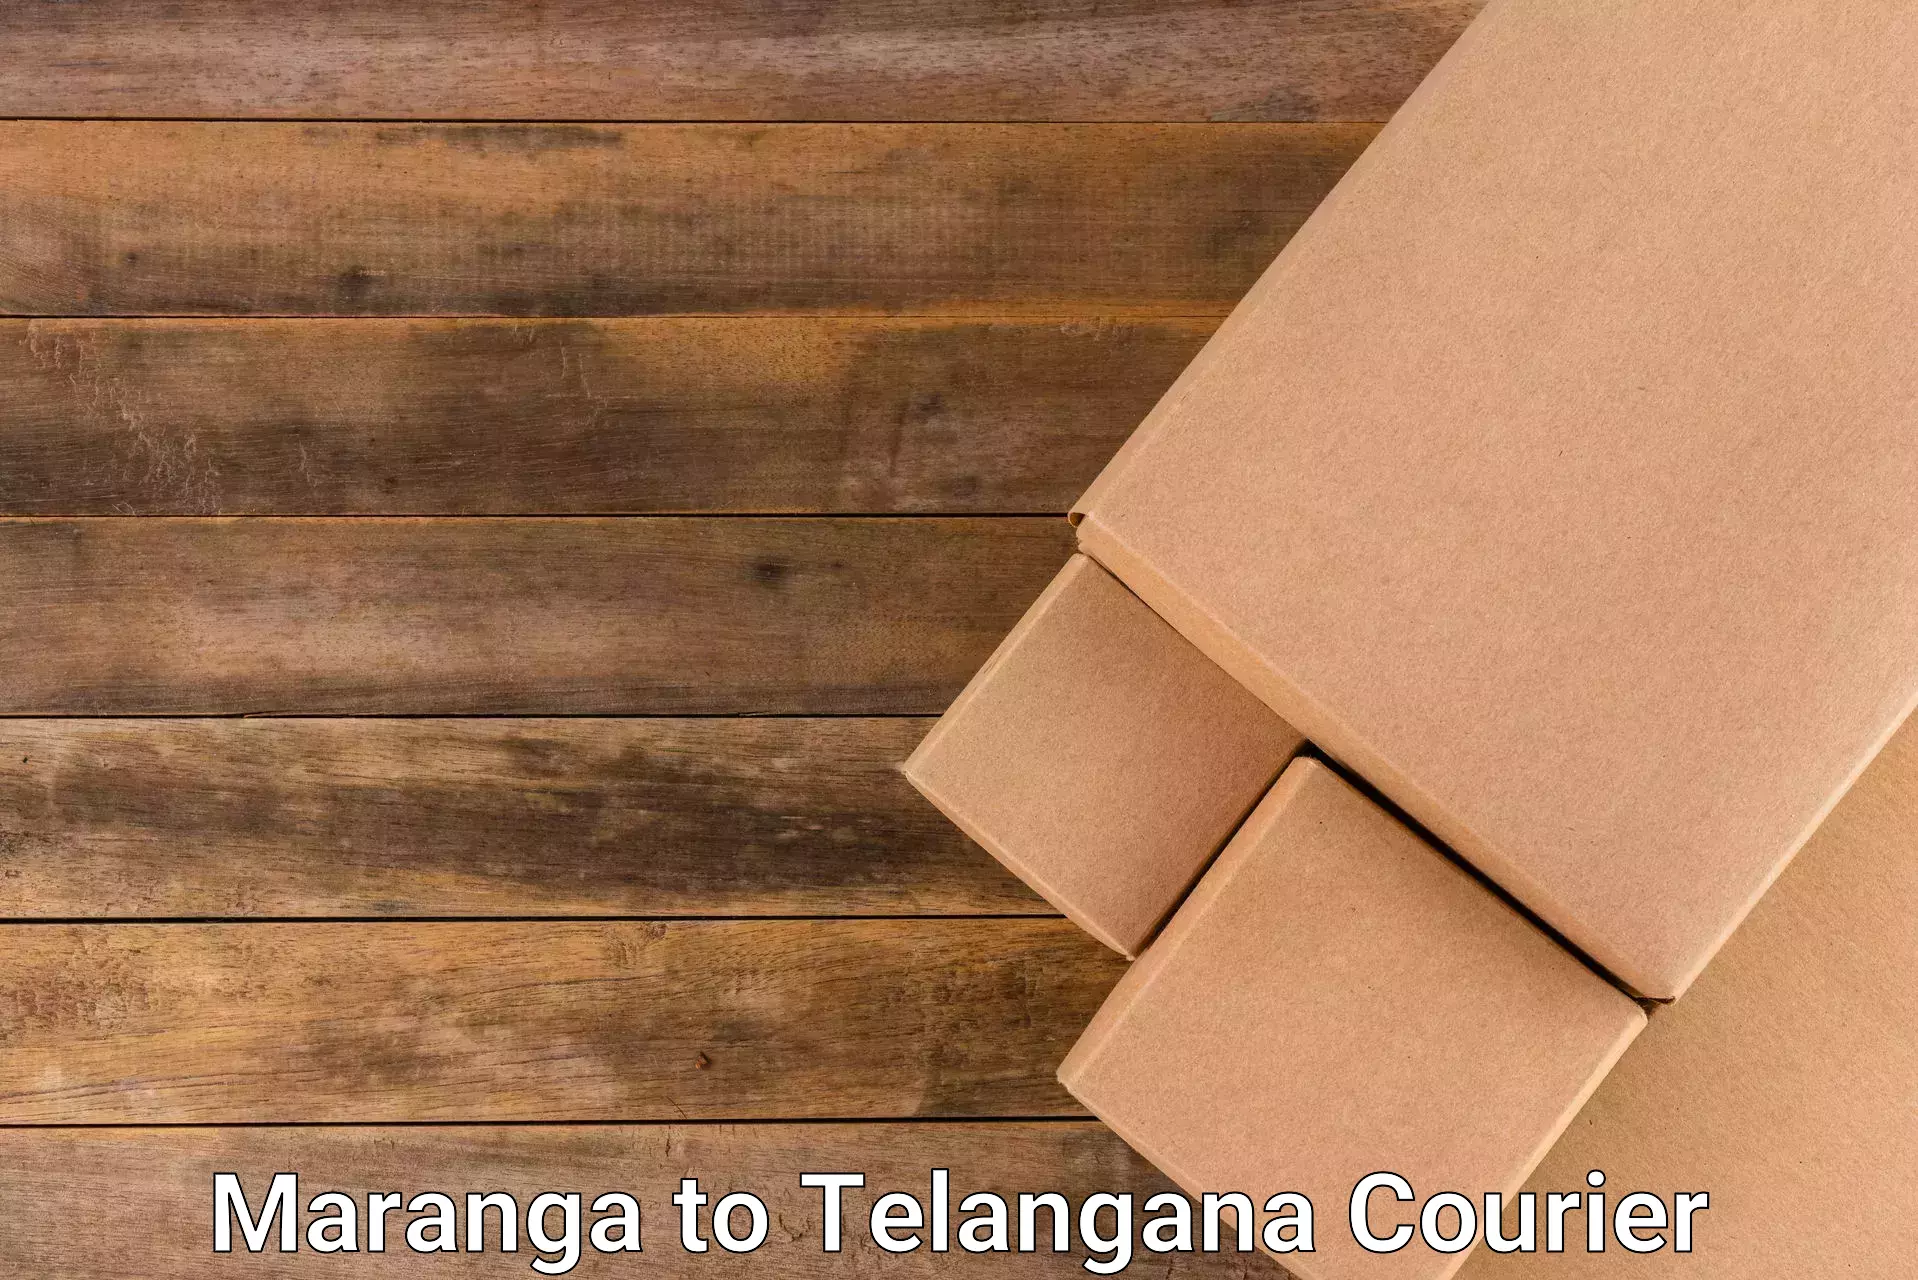 User-friendly courier app Maranga to Kothagudem